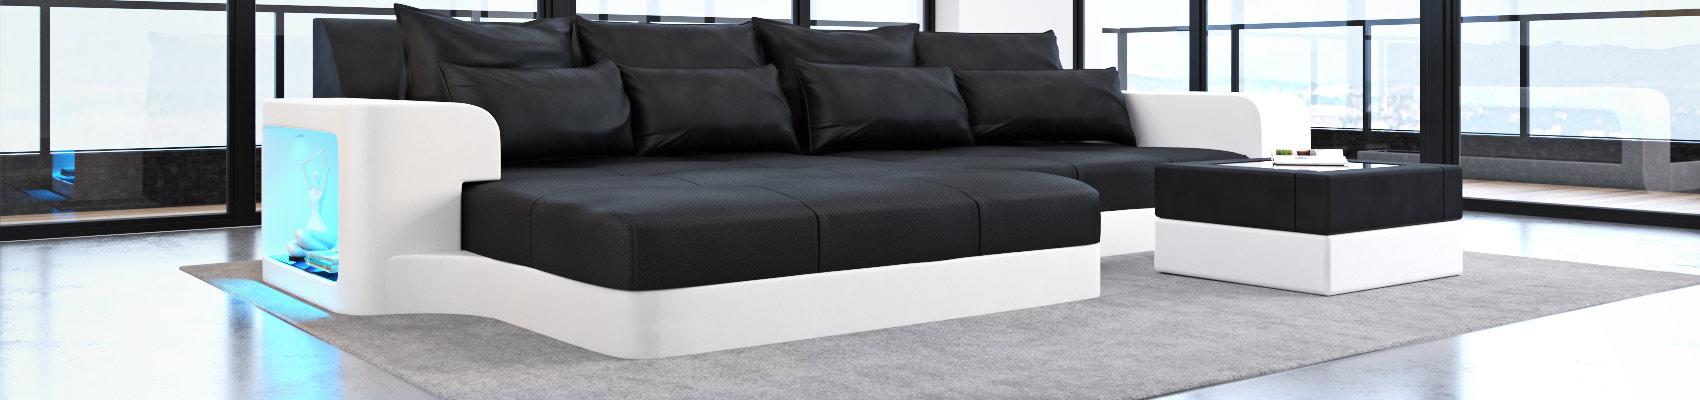 Big Sofa in Leder - moderne Ledersofas in der Big Variante